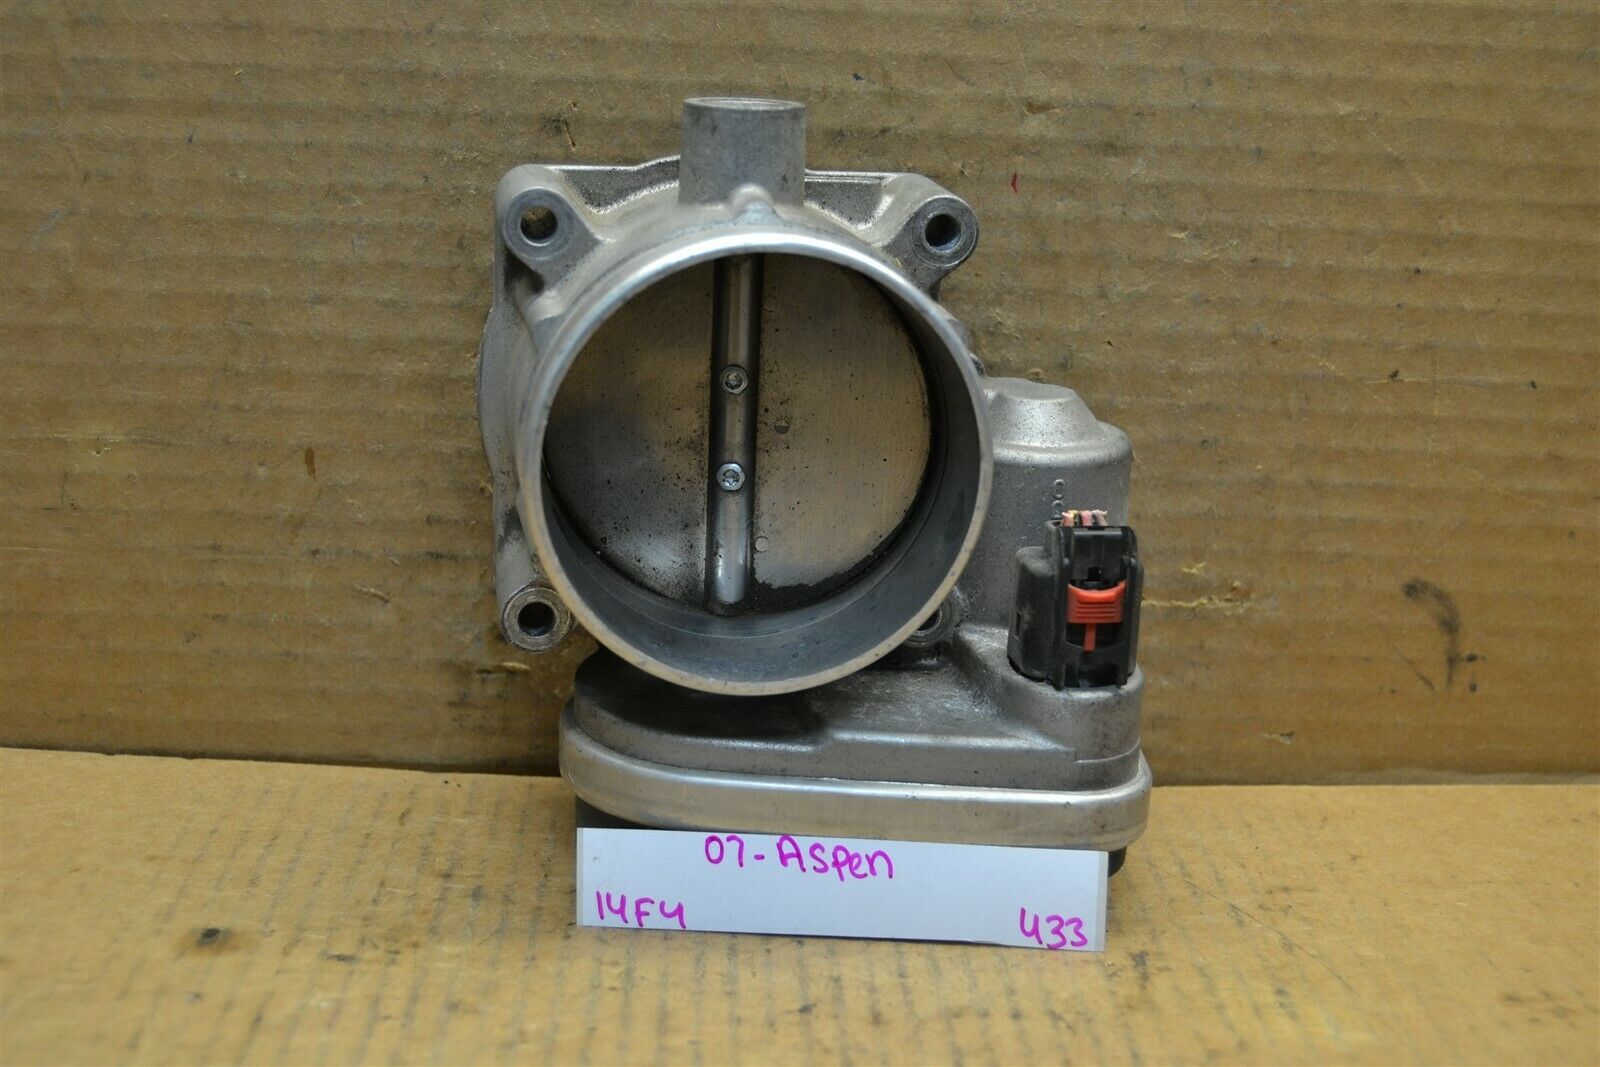 Primary image for 08-09 Chrysler Aspen Throttle Body OEM 5775292 Assembly 433-14f4